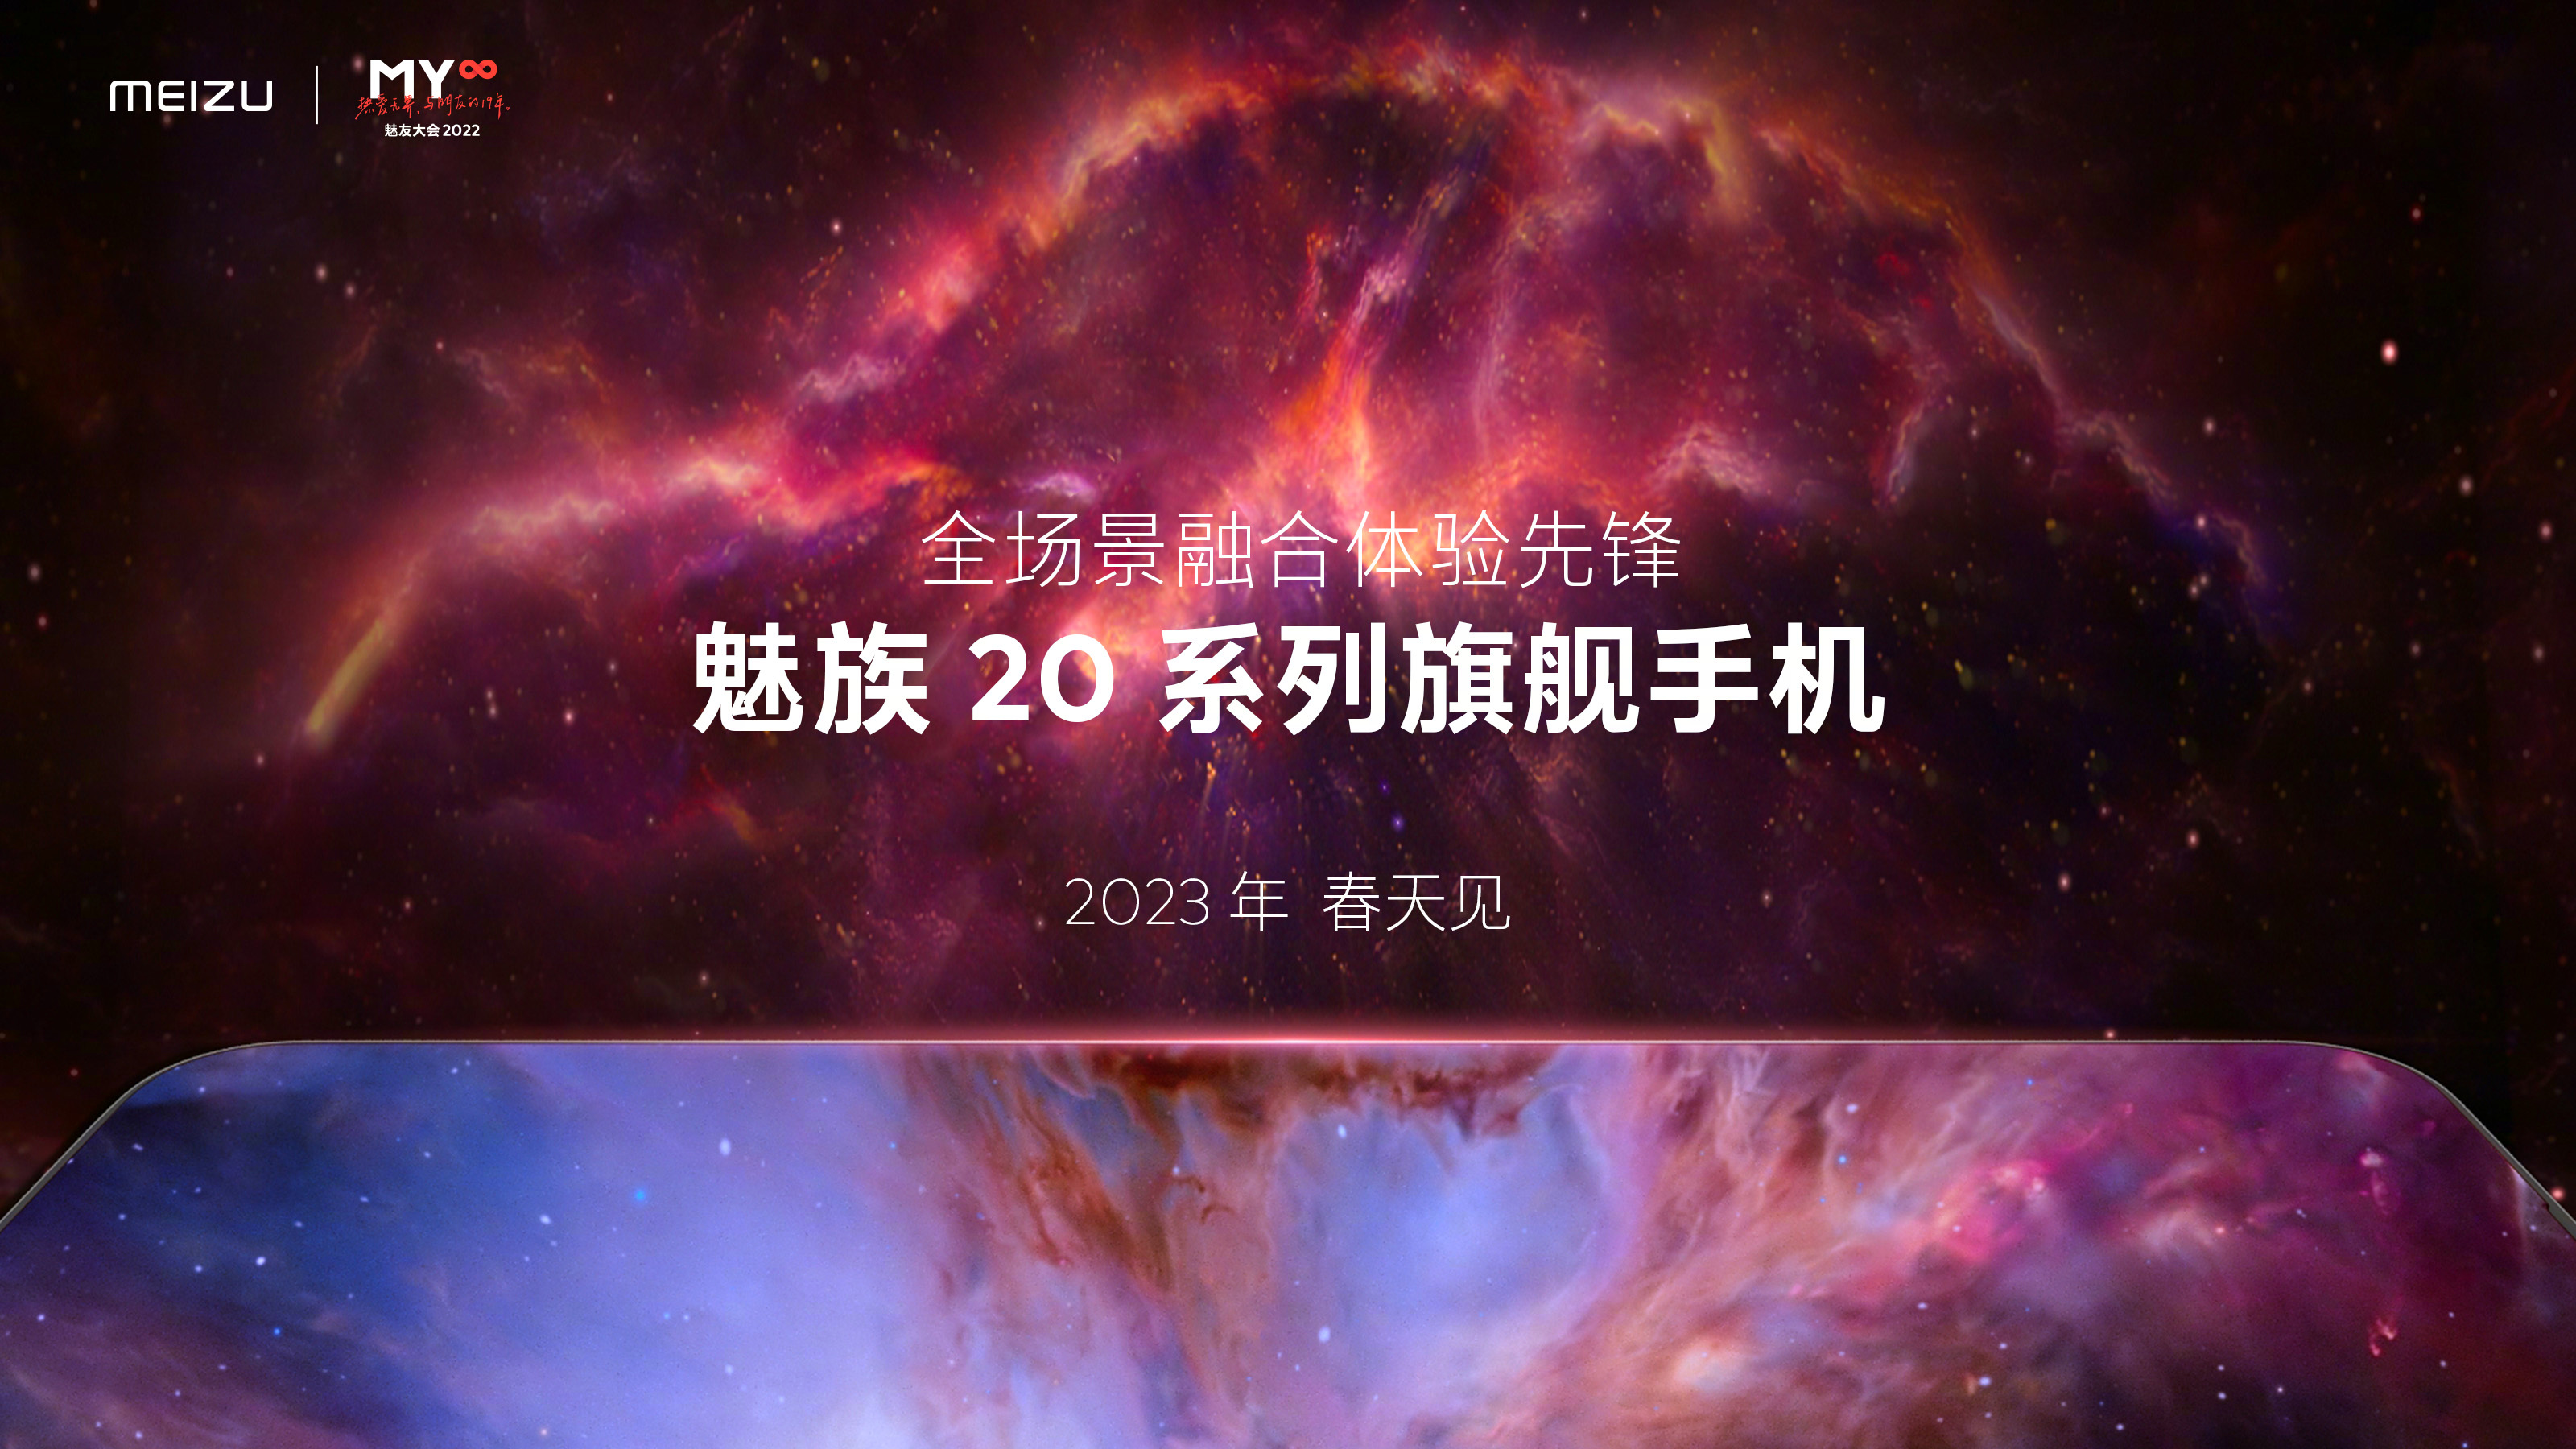 Meizu 20: dies wird der Name der neuen Flaggschiff-Linie von Smartphones Meizu sein